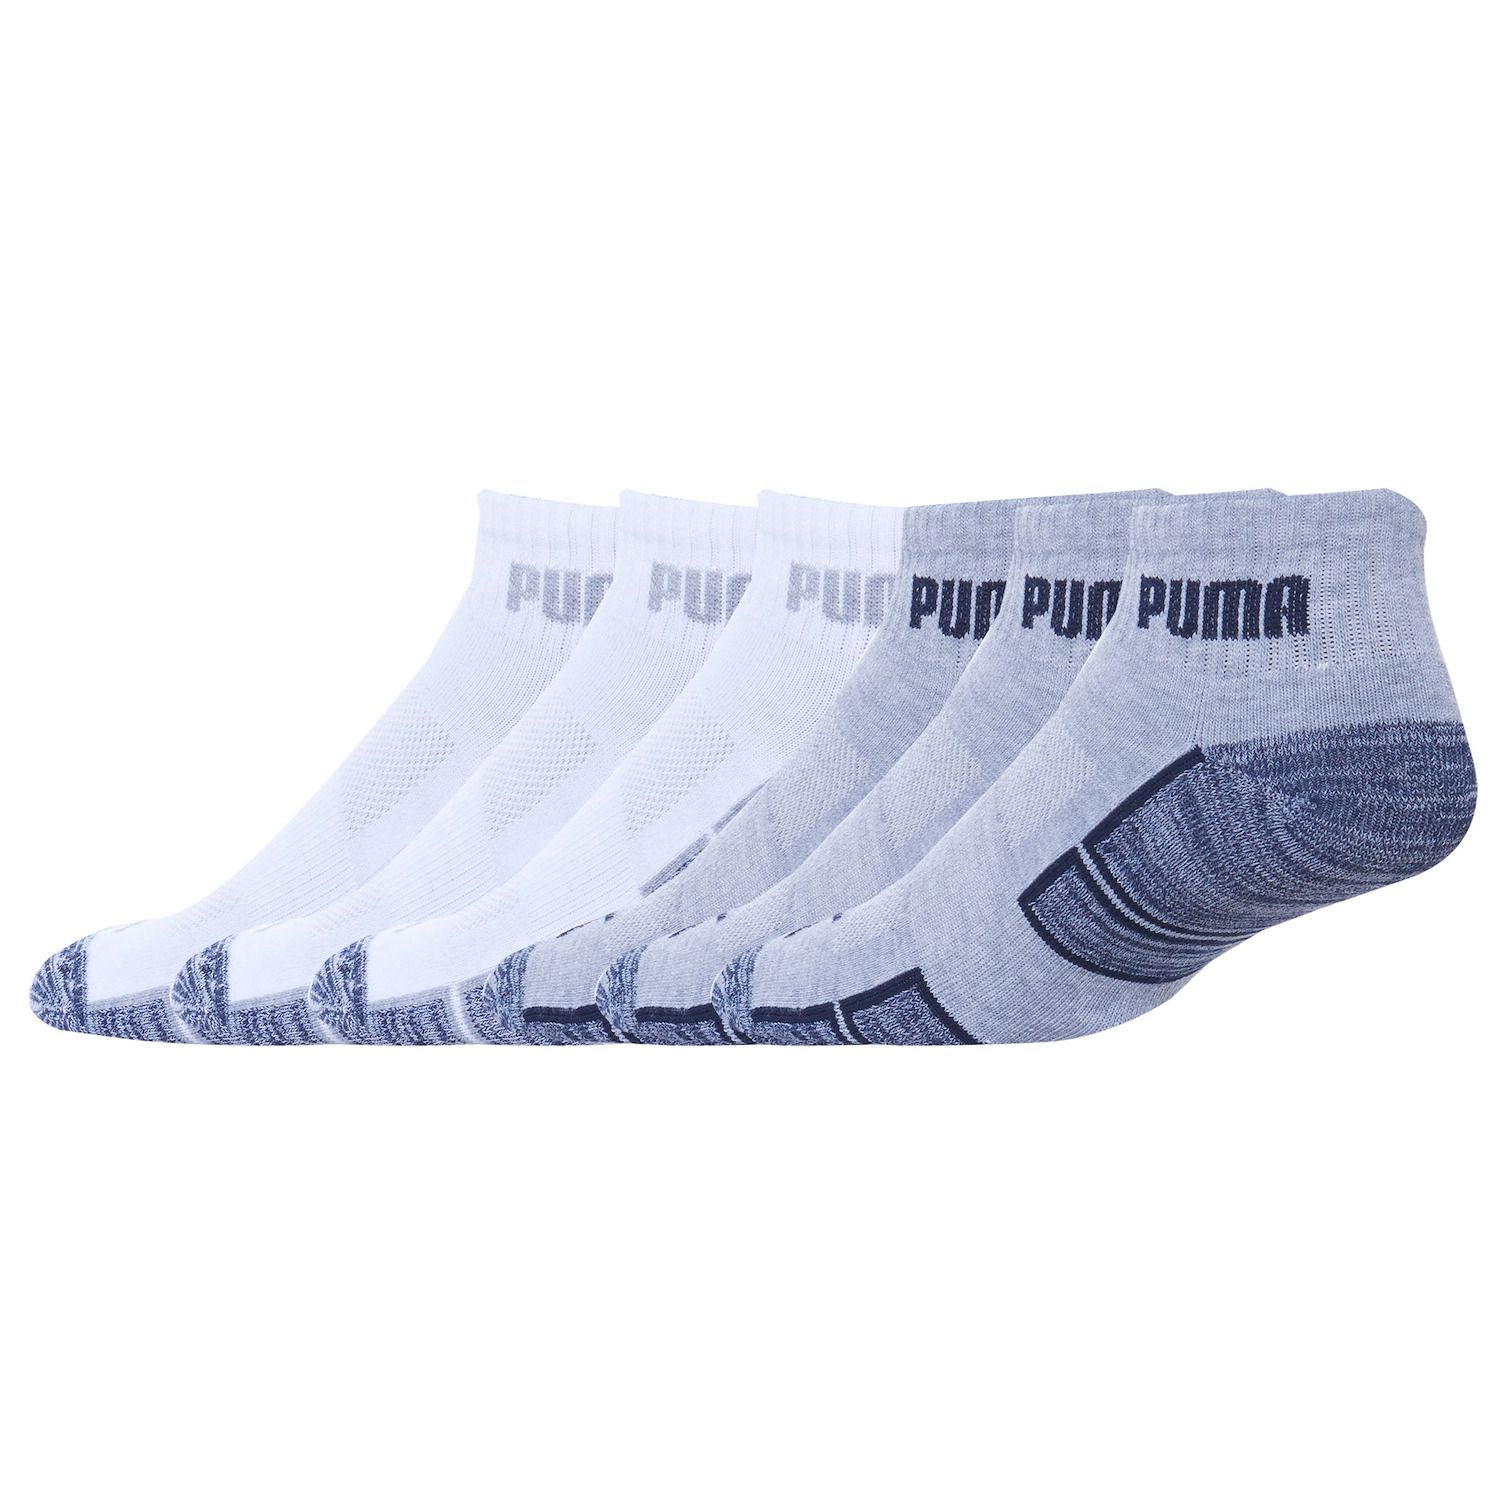 puma socks kohls